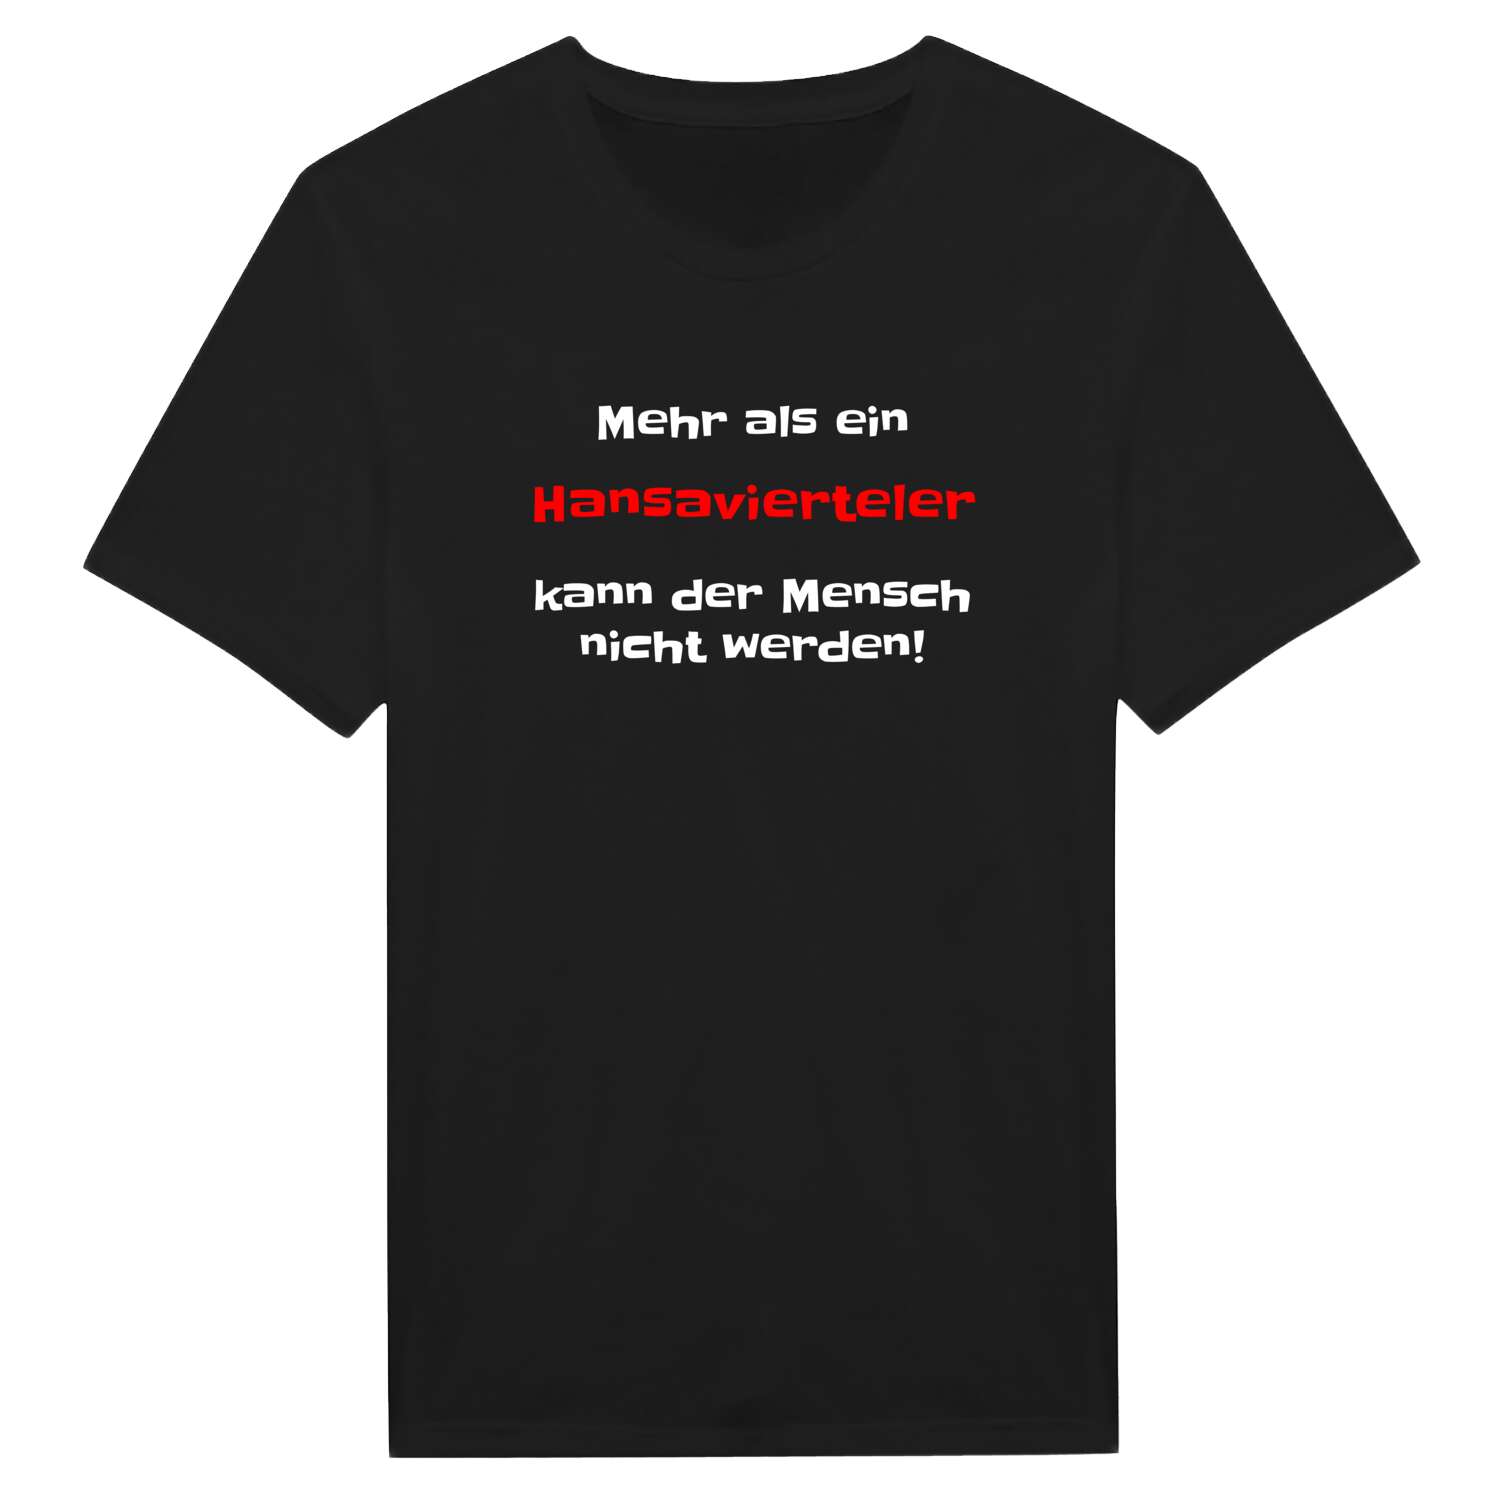 Hansaviertel T-Shirt »Mehr als ein«